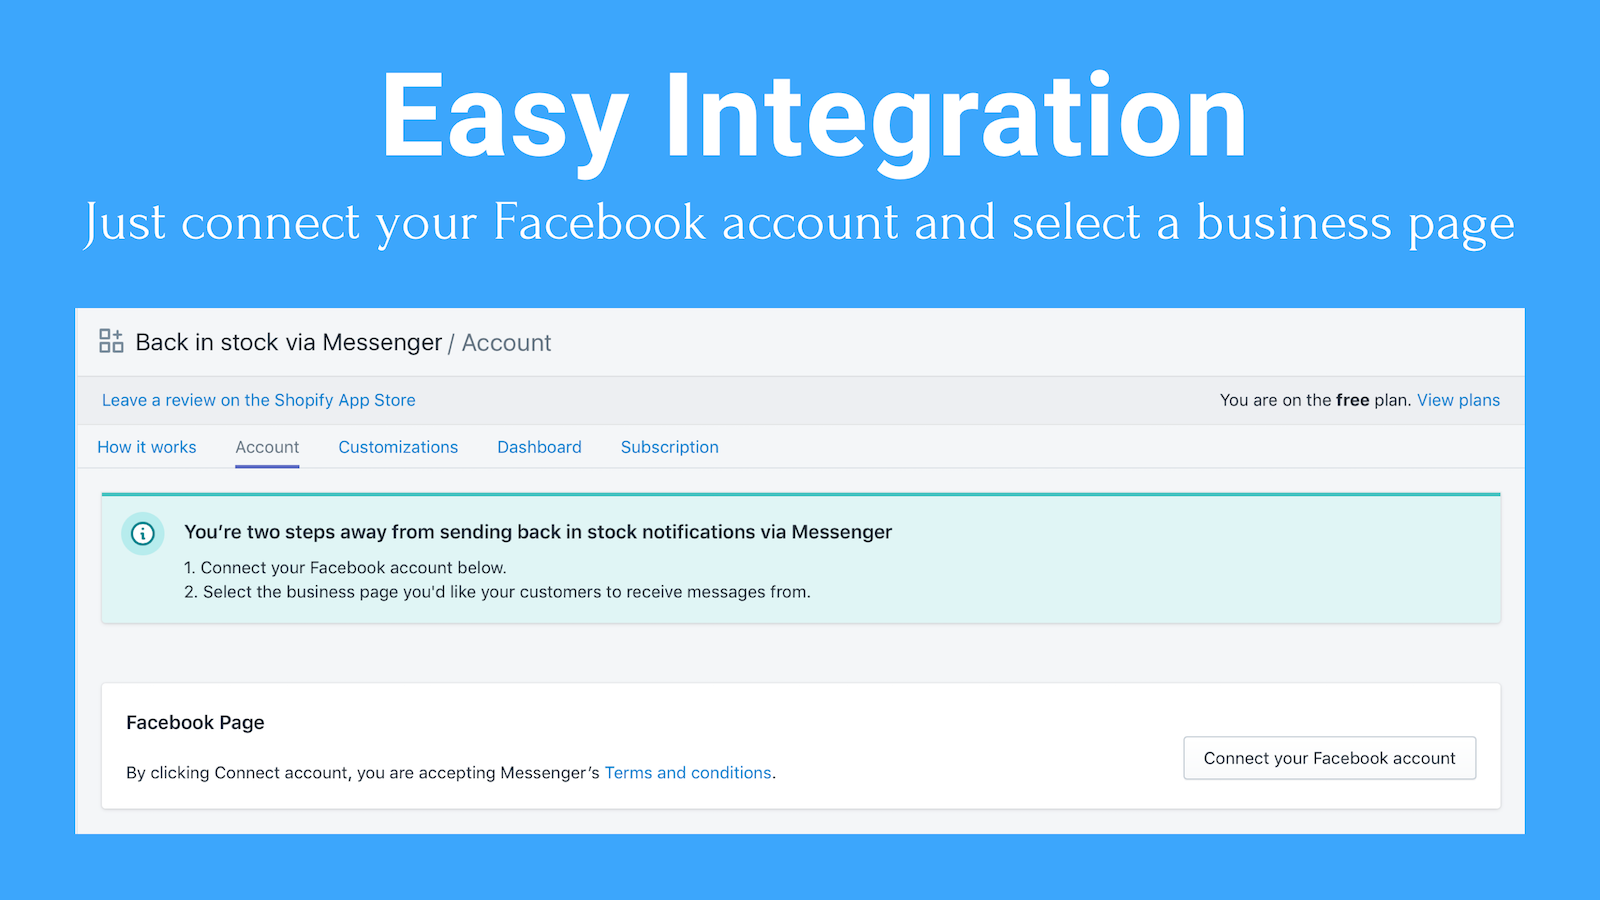 Integración fácil: Solo conecta tu cuenta de Facebook y selecciona